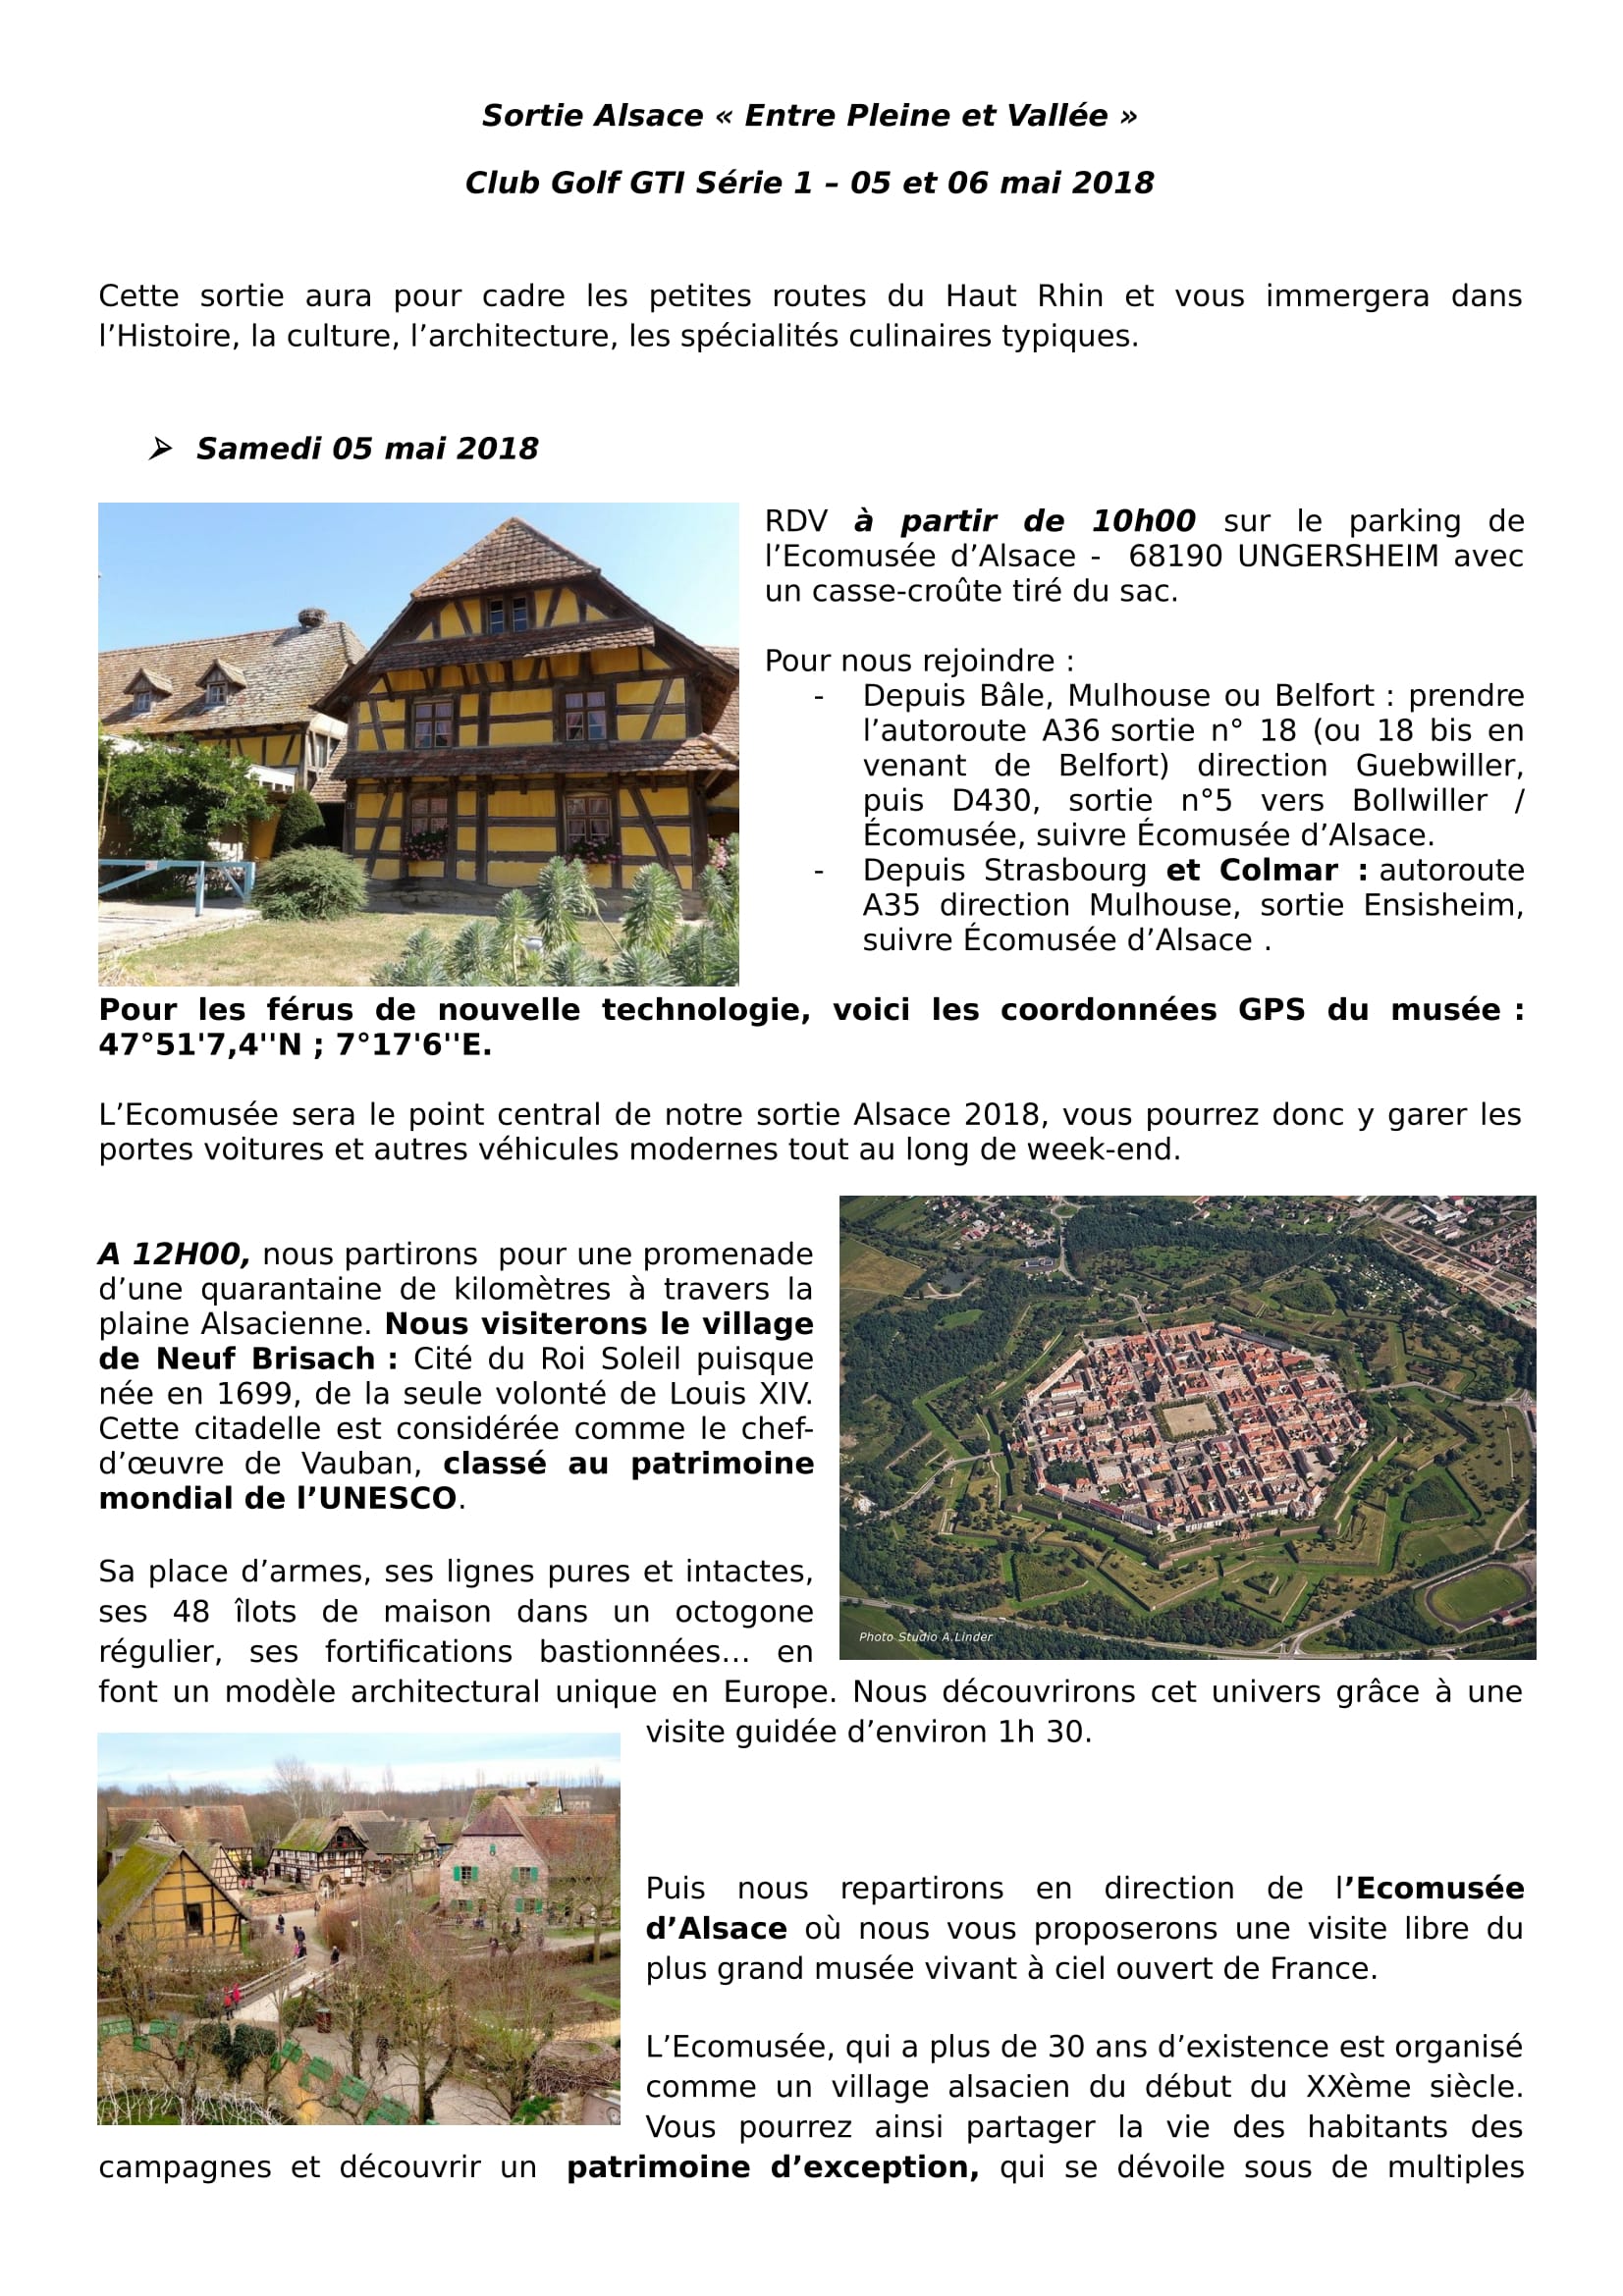 Sortie Alsace entre plaine et vallée le 5/6 Mai 2018 - Page 3 18030710205121506915601224